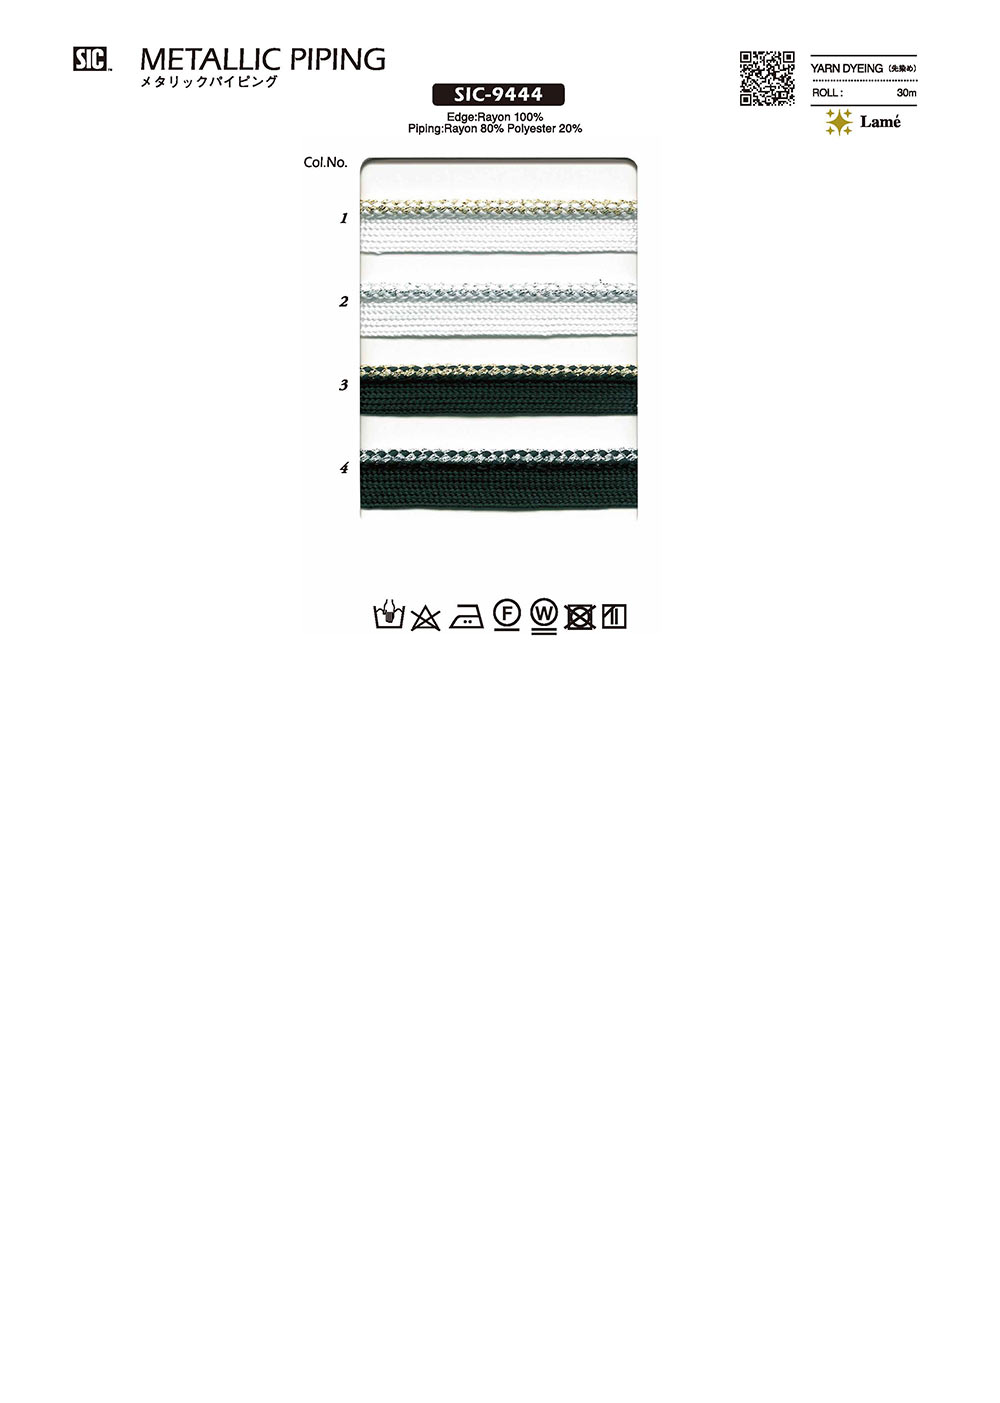 SIC-9444 Băng Dây Viền ống Kim Loại[Dây Băng Ruy Băng] SHINDO(SIC)